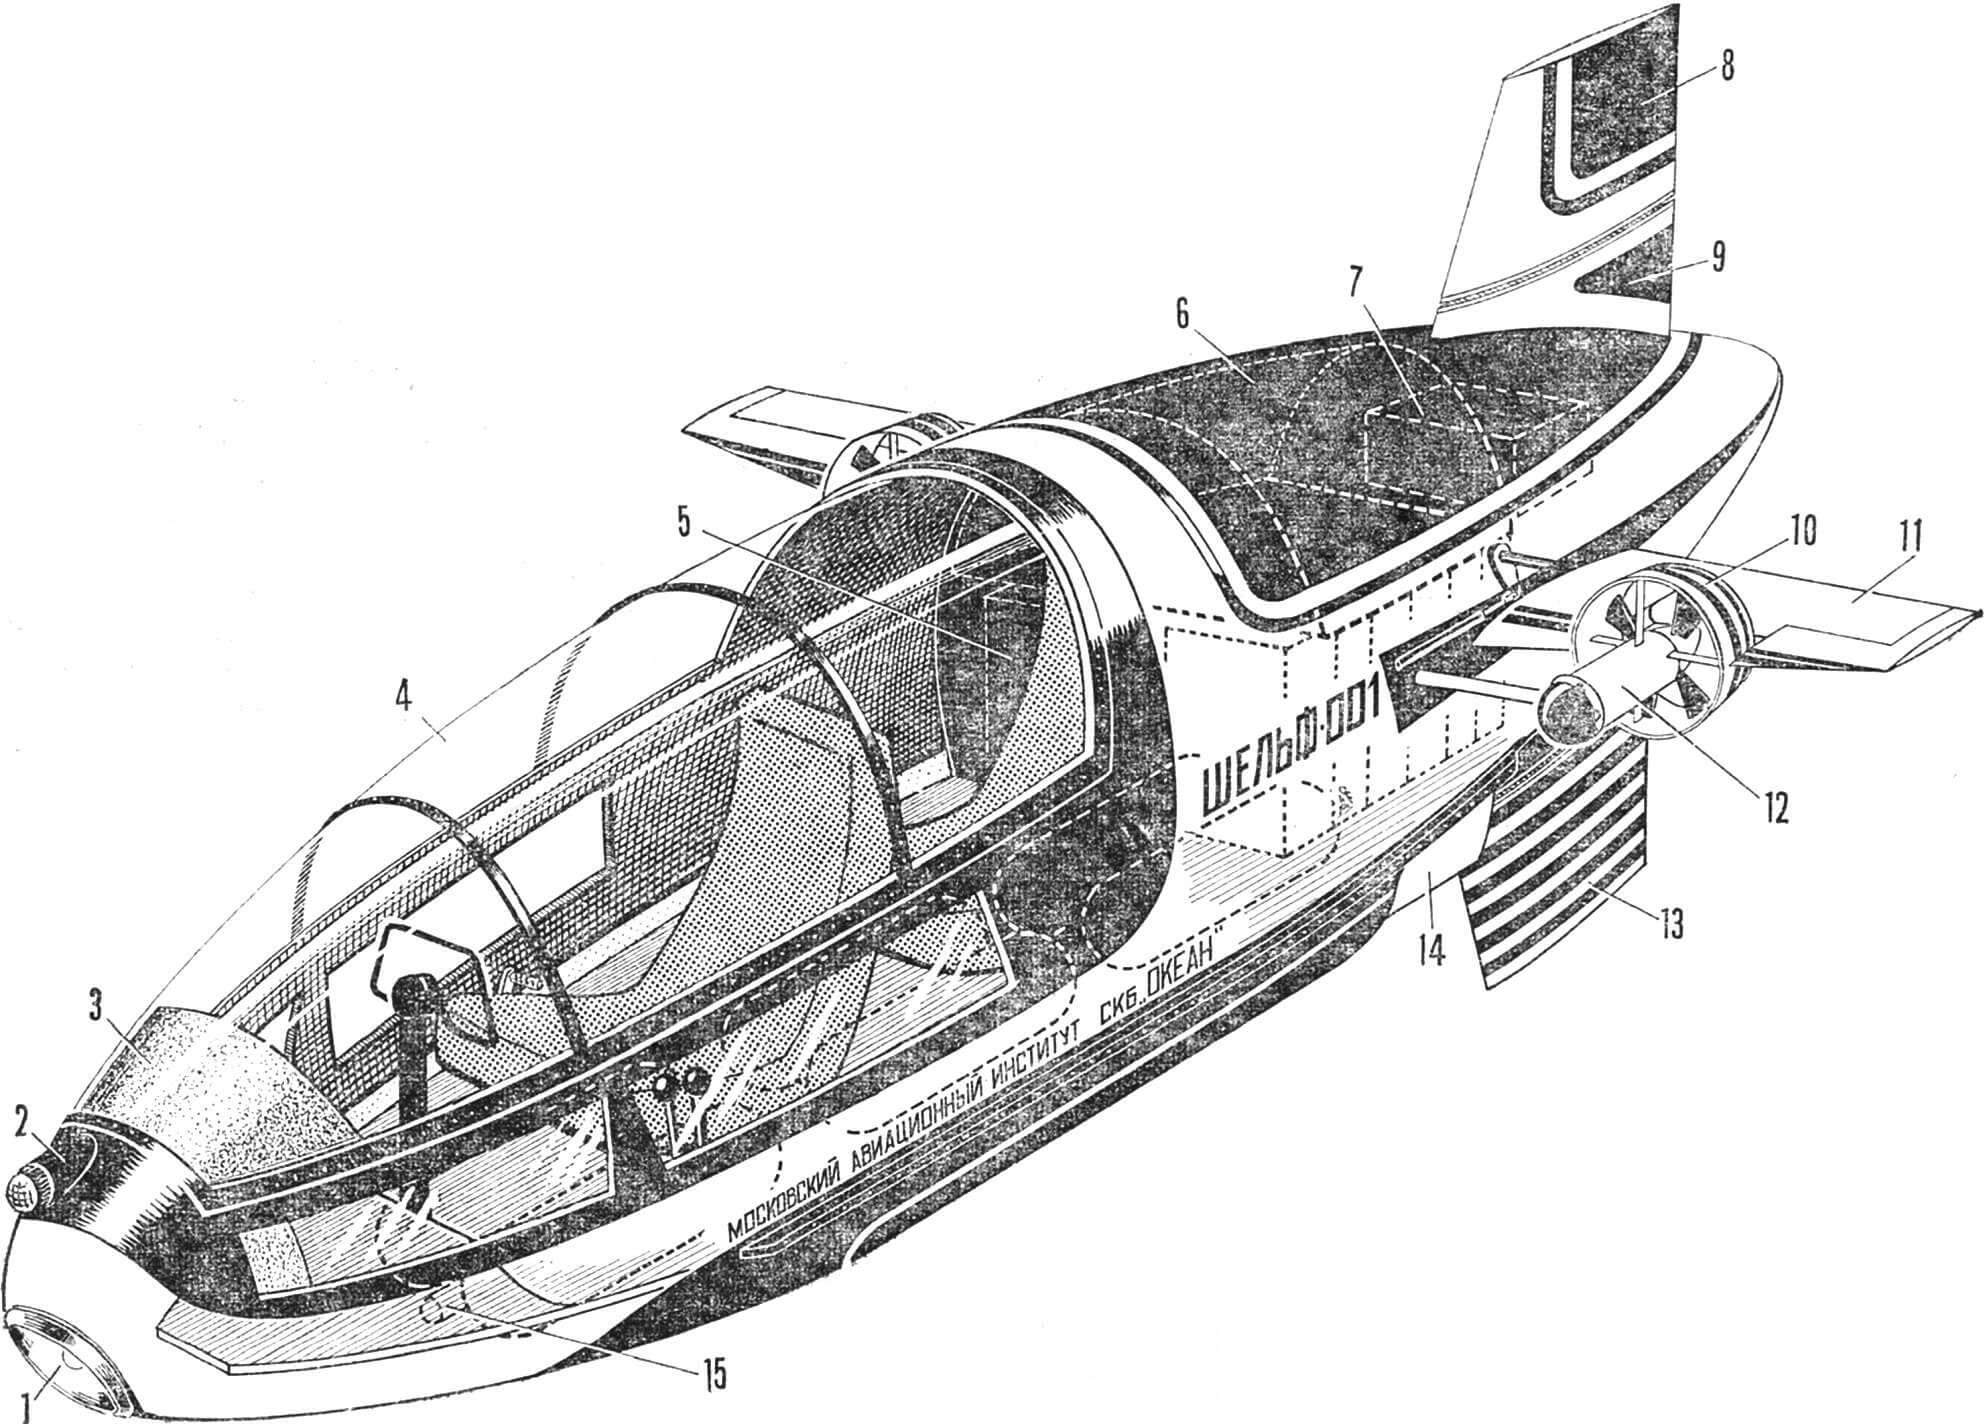 Рис. 1. Компоновка двухместной подводной лодки «Шельф-001»